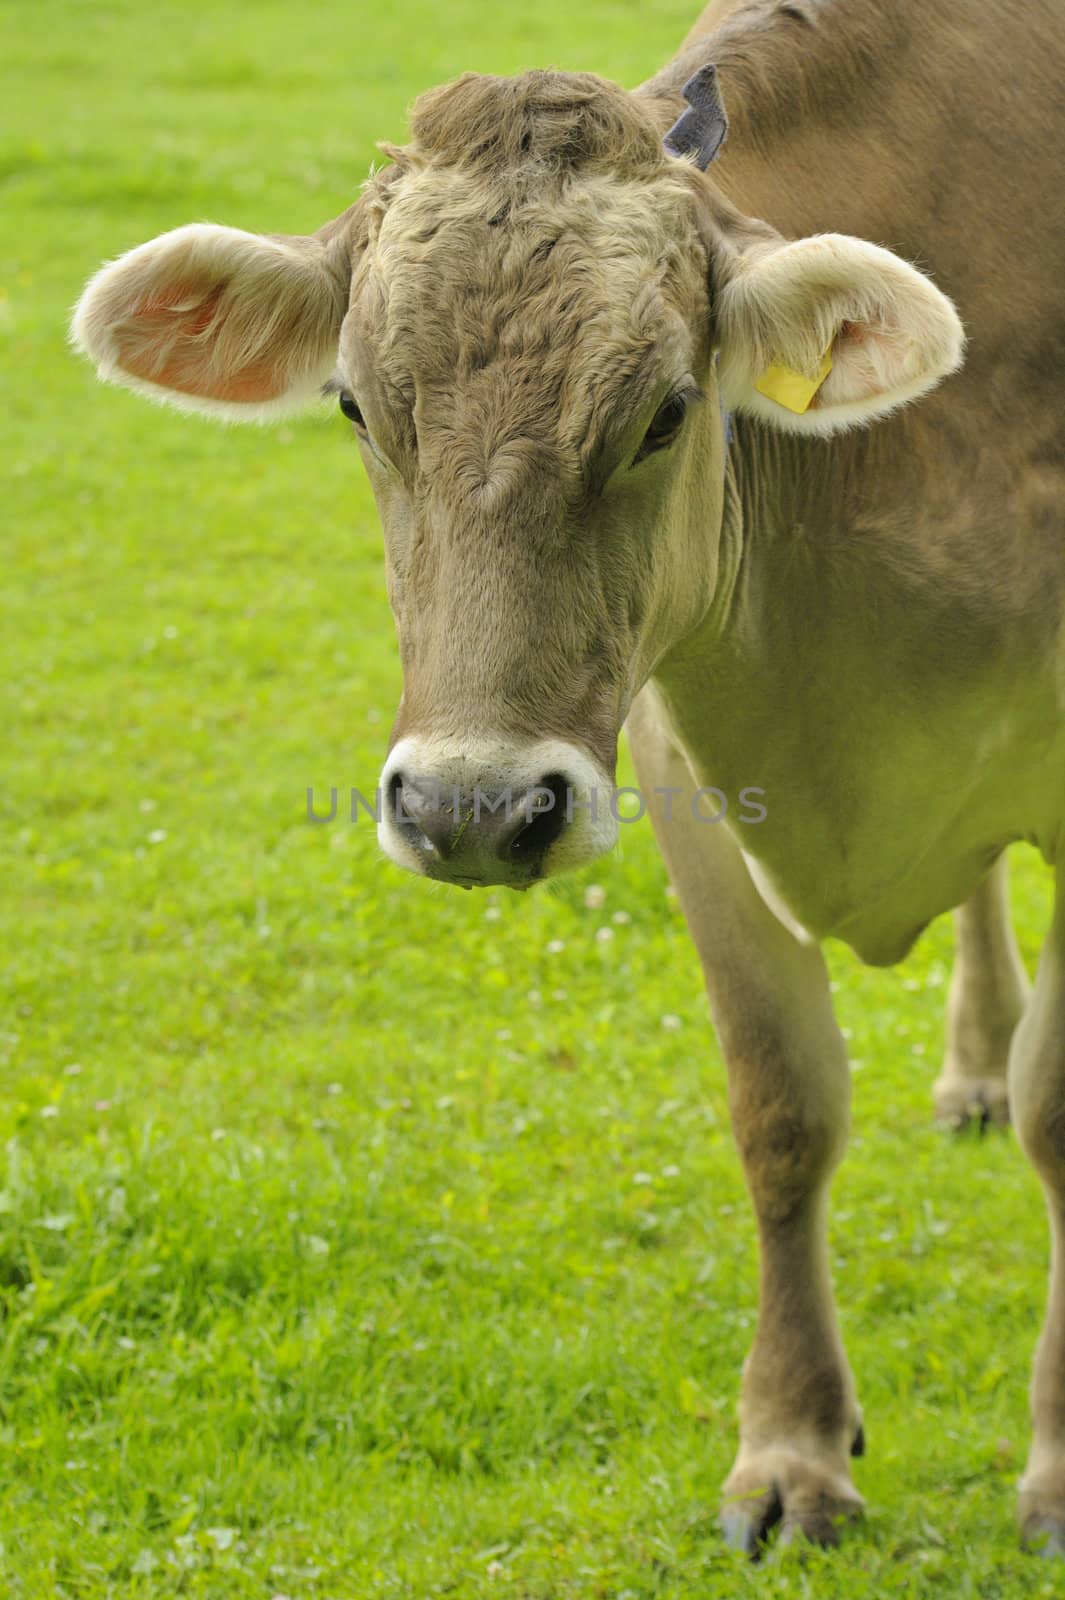 Cow close up by Bateleur